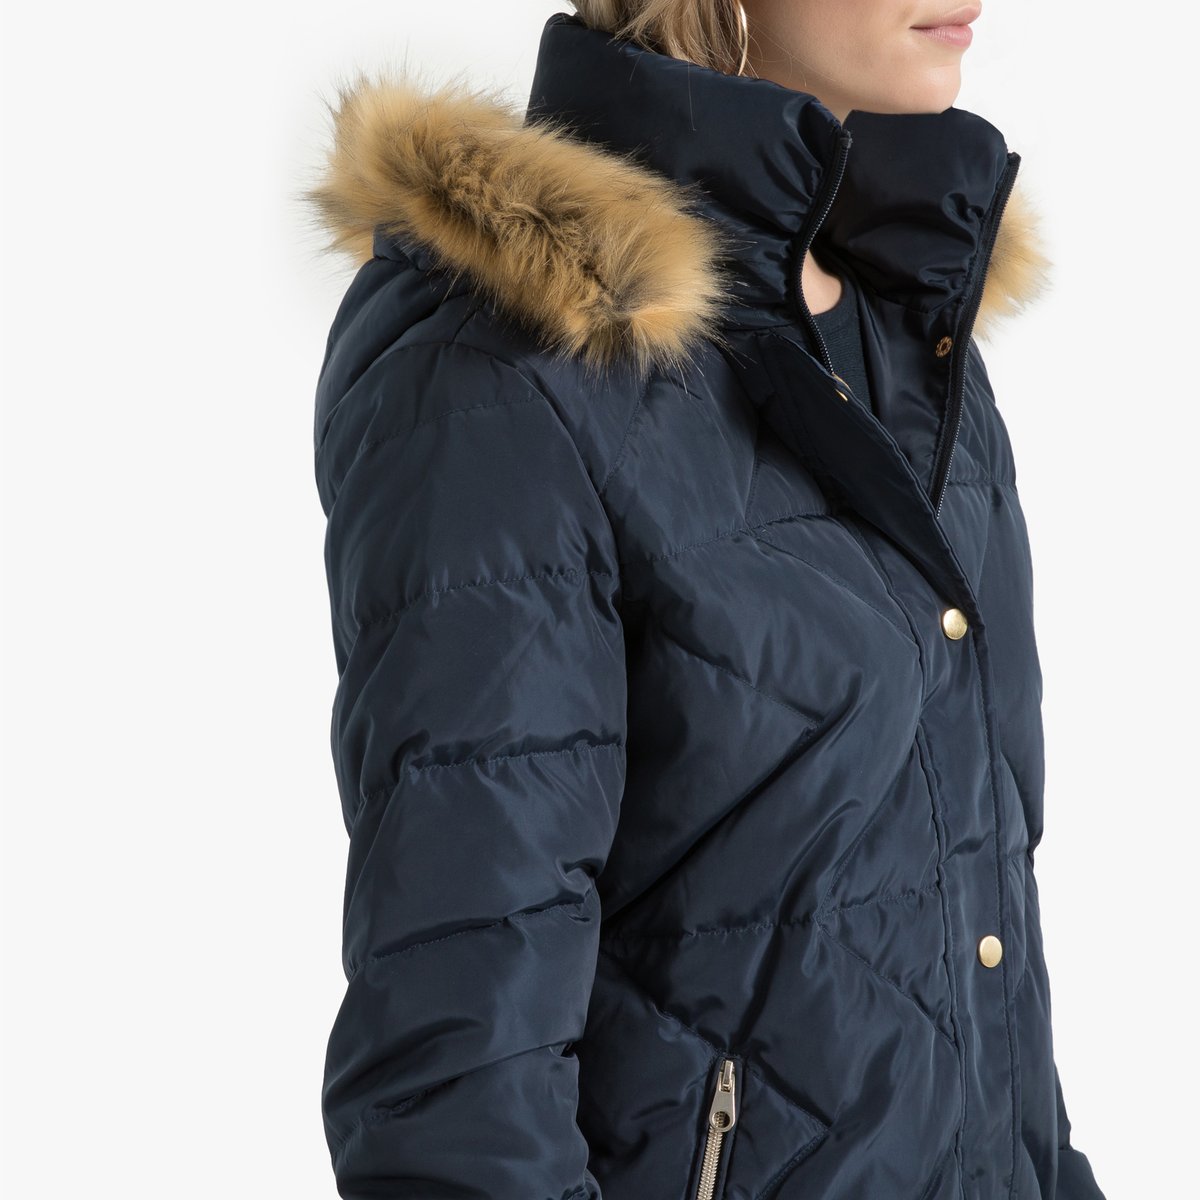 Куртка La Redoute Стеганая с капюшоном зимняя 52 (FR) - 58 (RUS) синий, размер 52 (FR) - 58 (RUS) Стеганая с капюшоном зимняя 52 (FR) - 58 (RUS) синий - фото 3